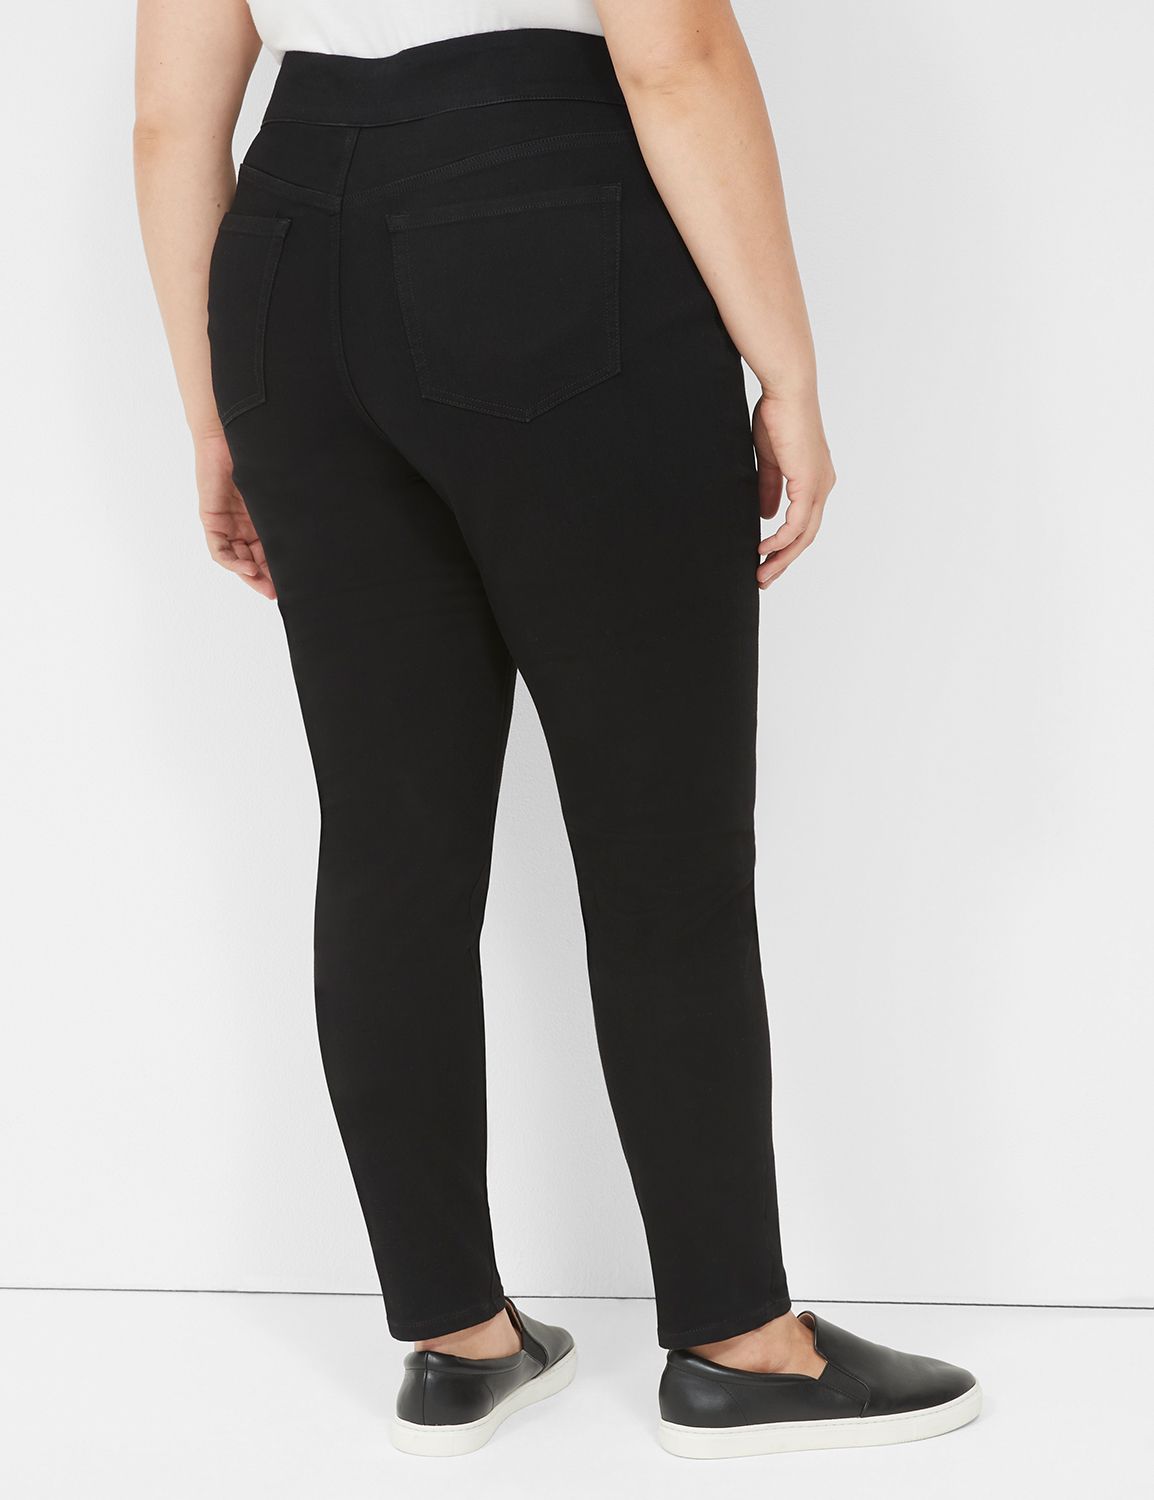 Wholesale Plus Size Mid-Rise Denim Jeggings Pants for Sale